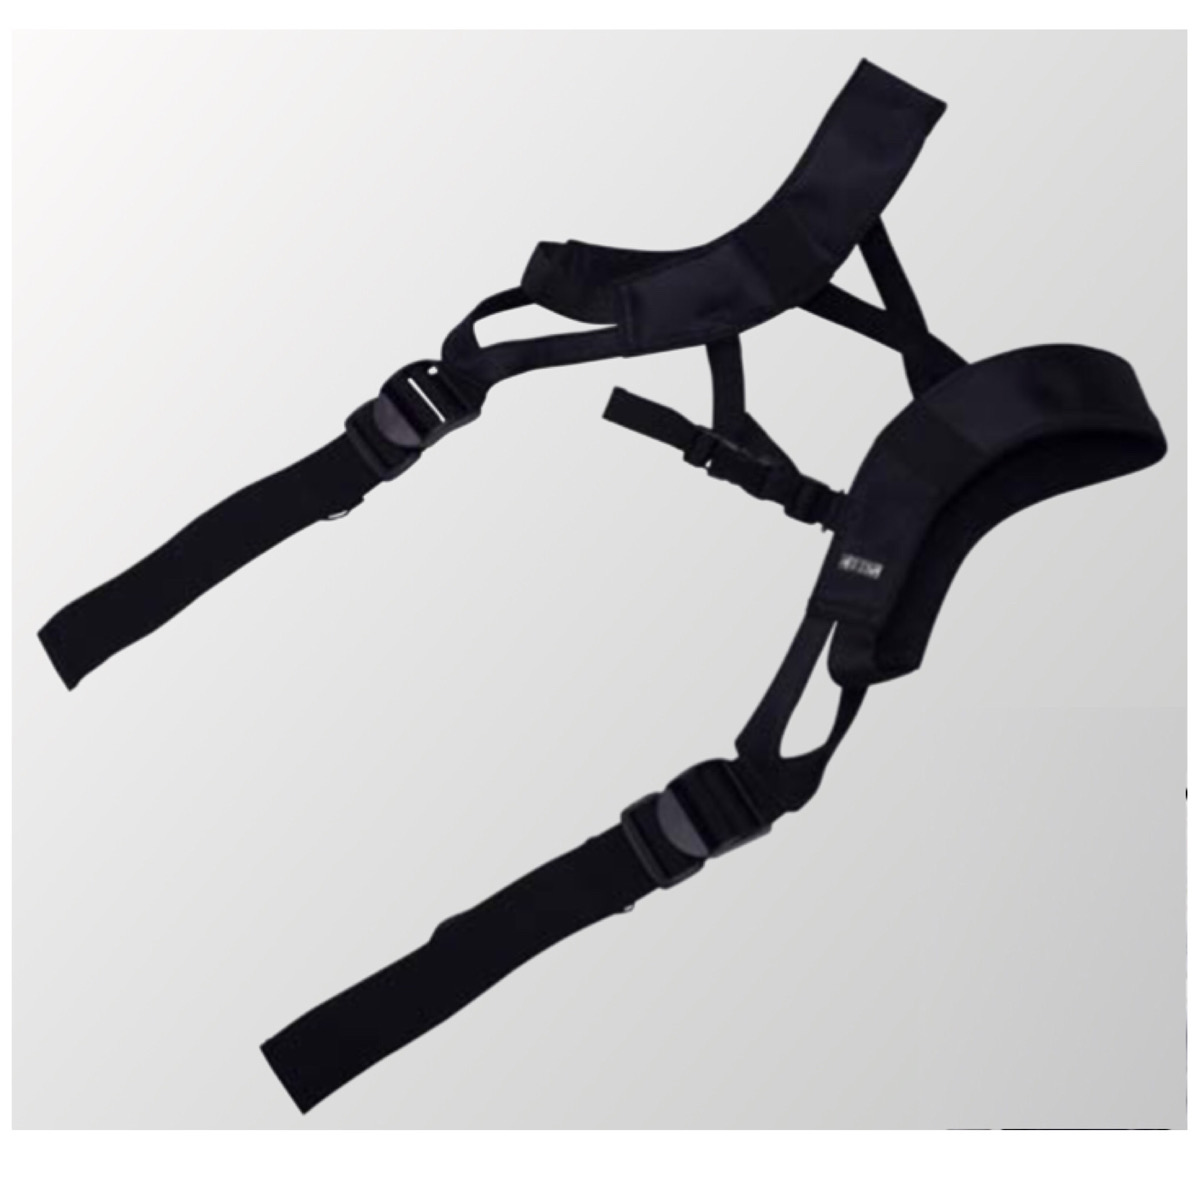 【楽天市場】KH 基陽 サスペンダー 工具 道具 サポーター ベルト ハンガー 腰当 安全帯 肩パッド X型 5300 X 3 : KUショップ  楽天市場店